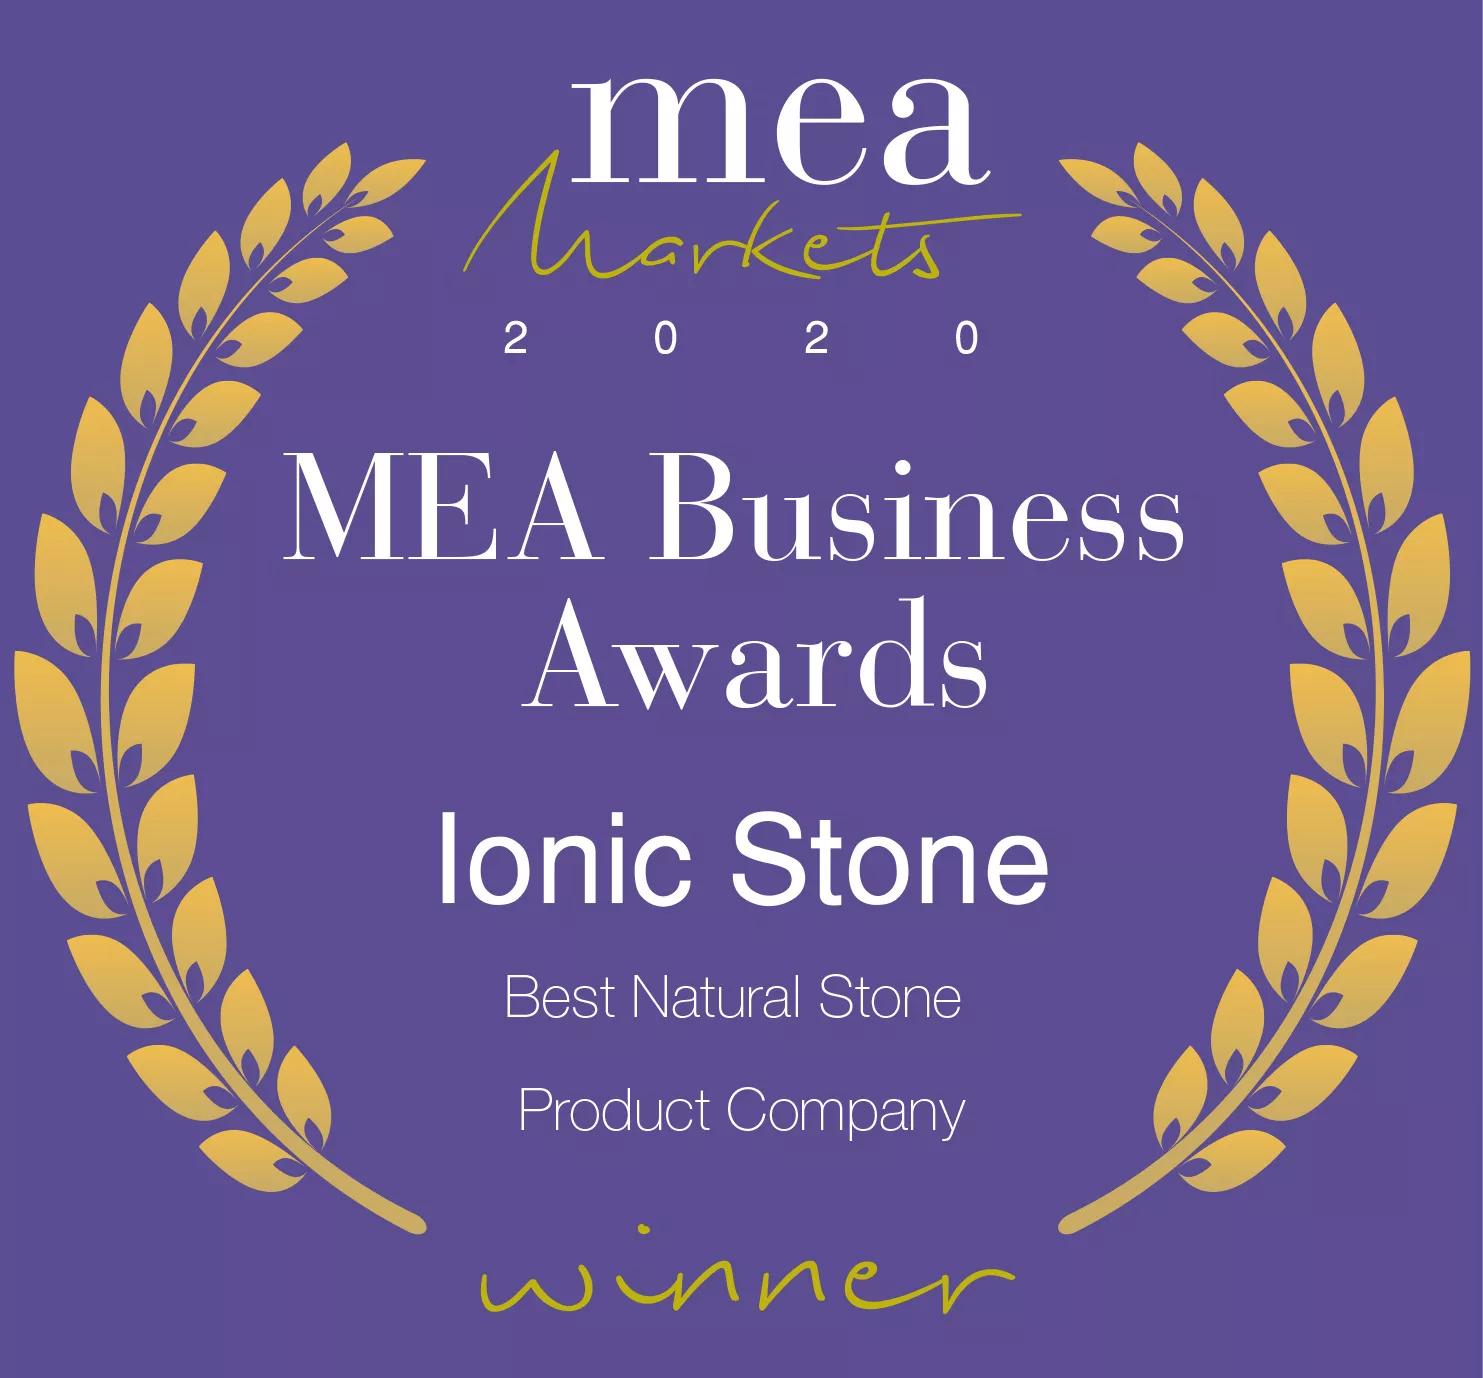 Ionic Stone, inovatif ürünleriyle en iyi doğal taş üreticisi seçildi